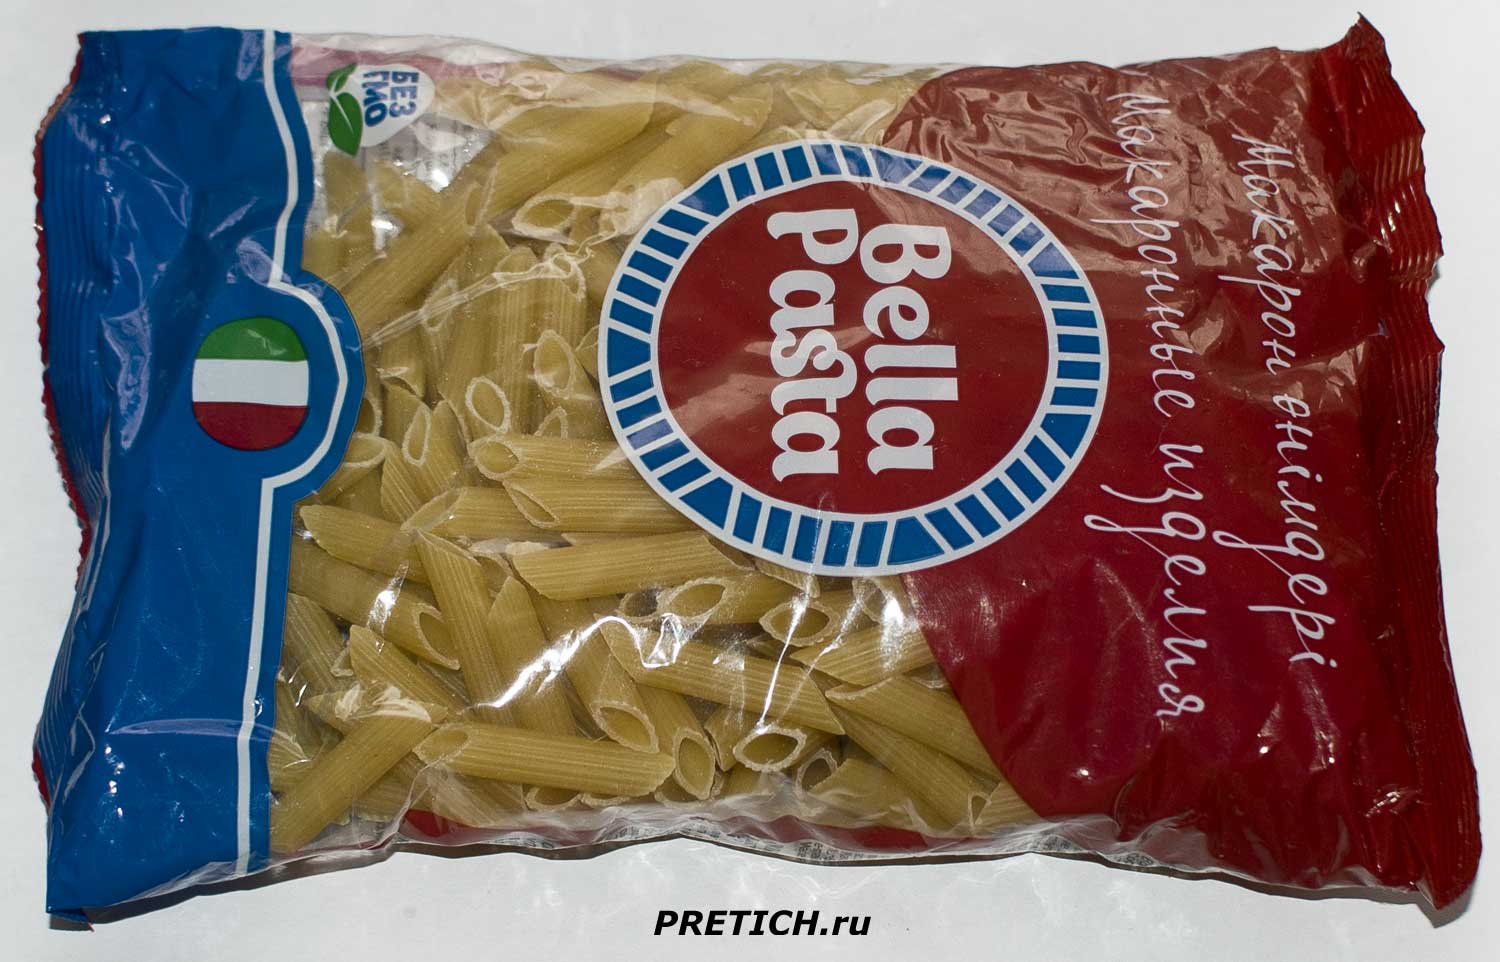 Макароны Bella Pasta перья 8 мм, производство Цесна-Мак, отзыв